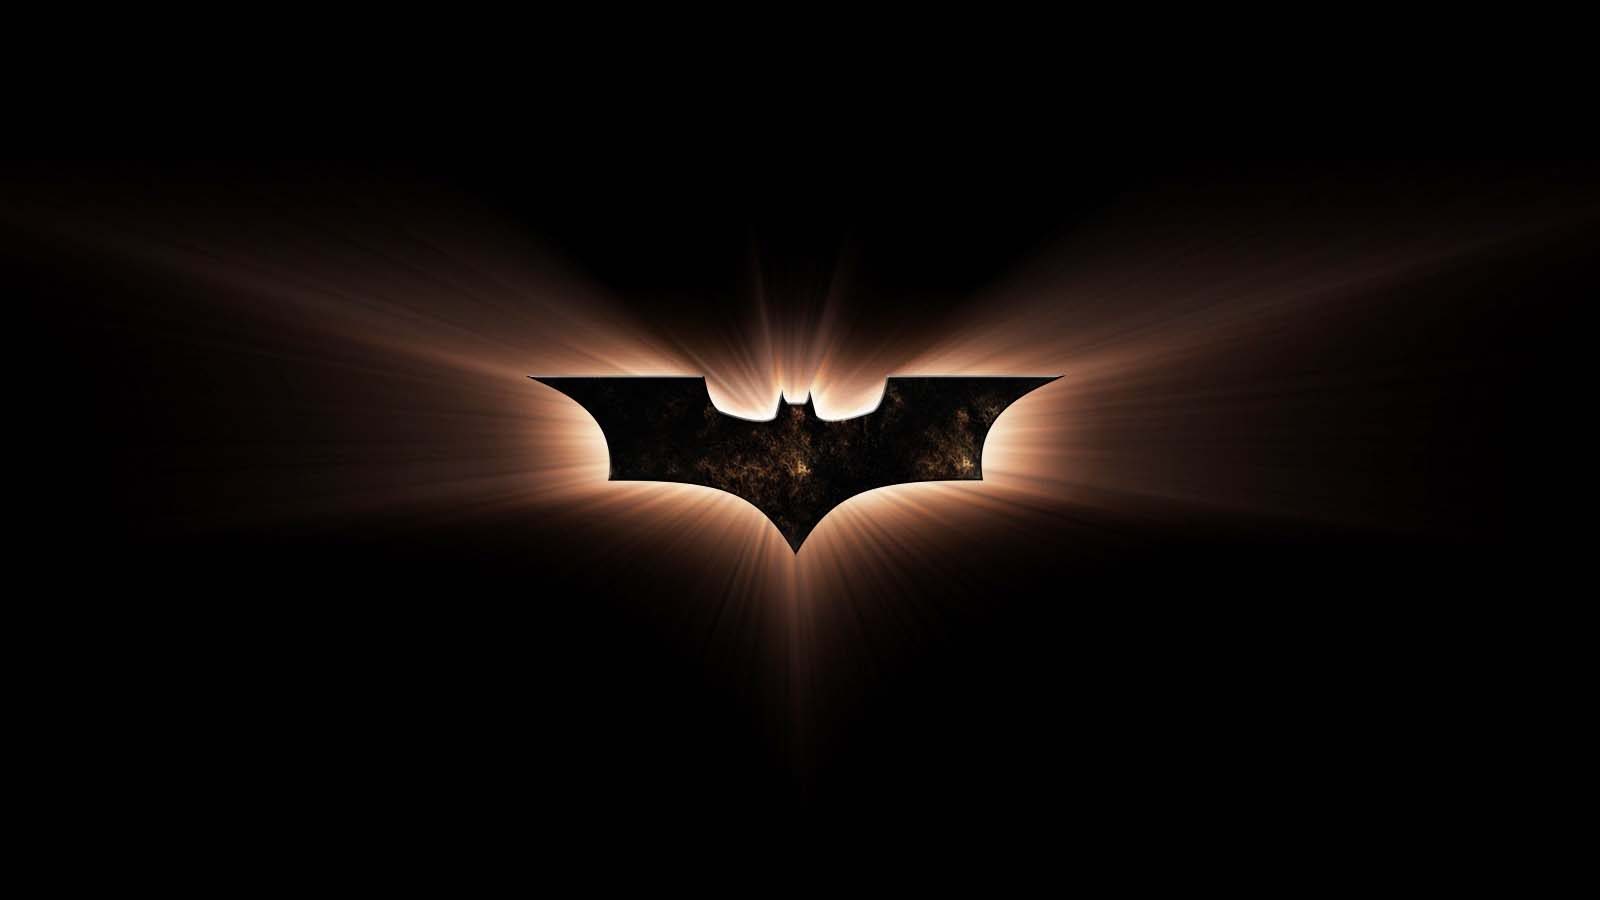 Ingresso.com comemora Dia do Batman com conteúdo exclusivo